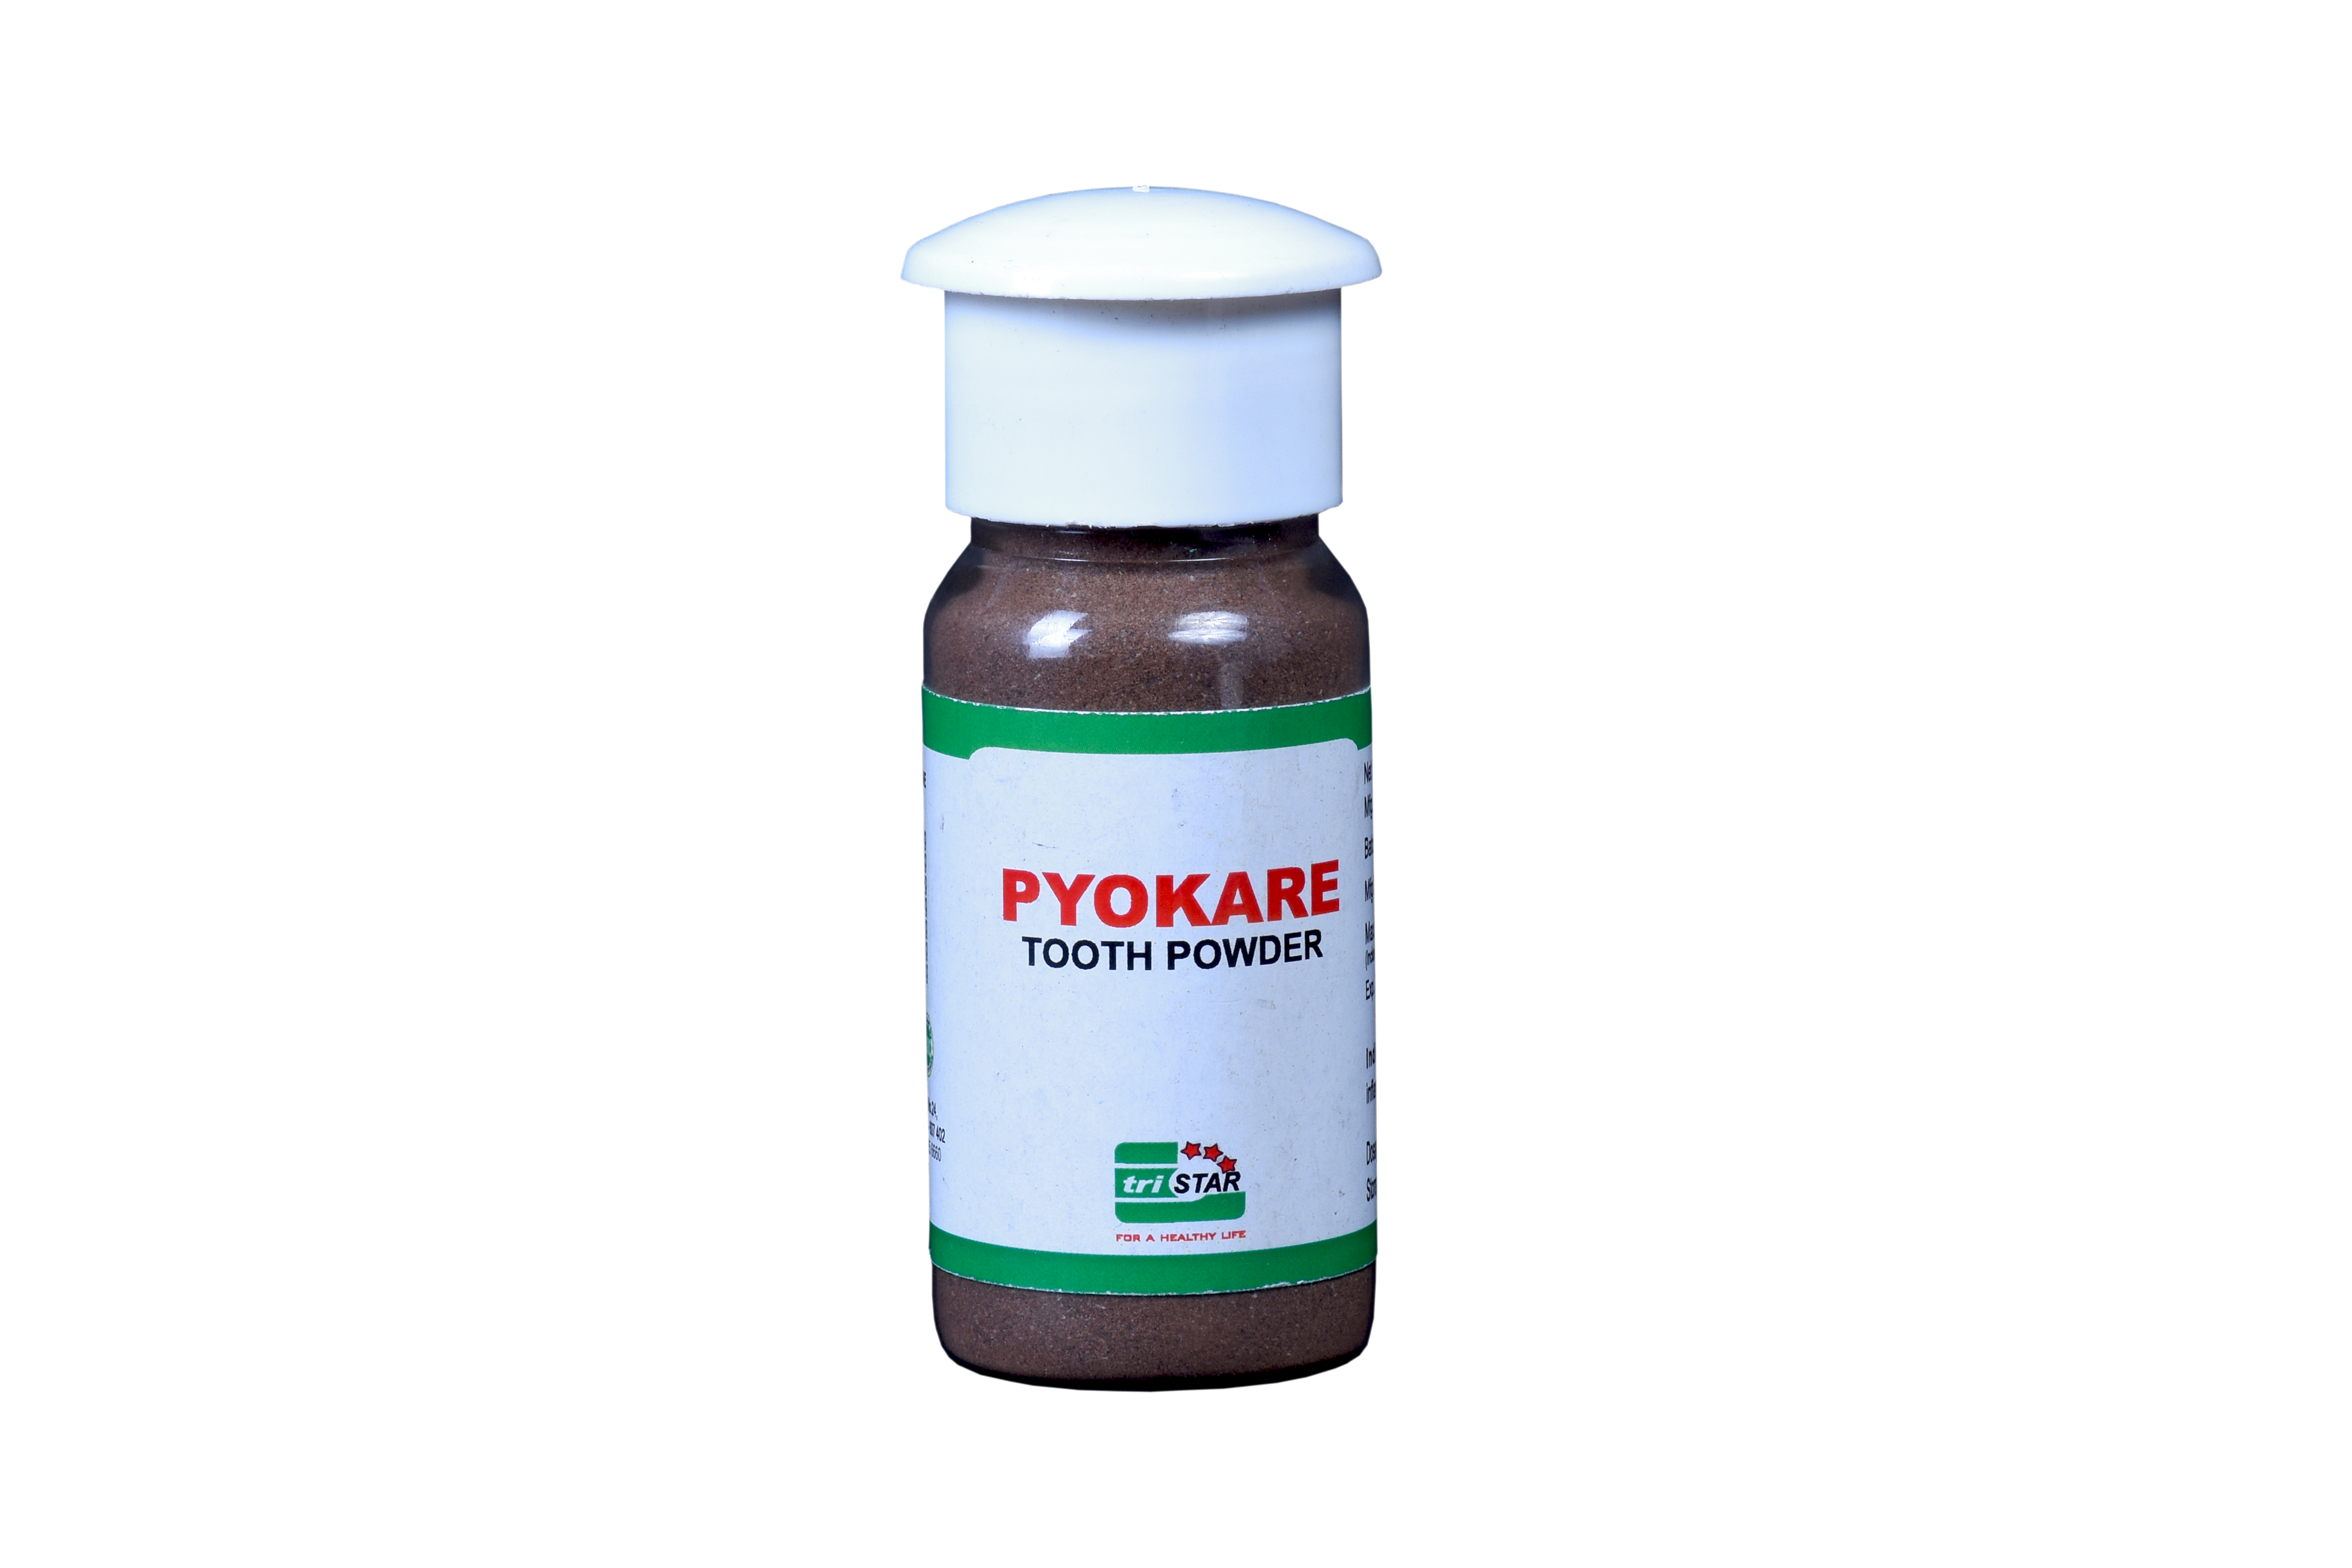 Image of Pyokare Tooth Powder